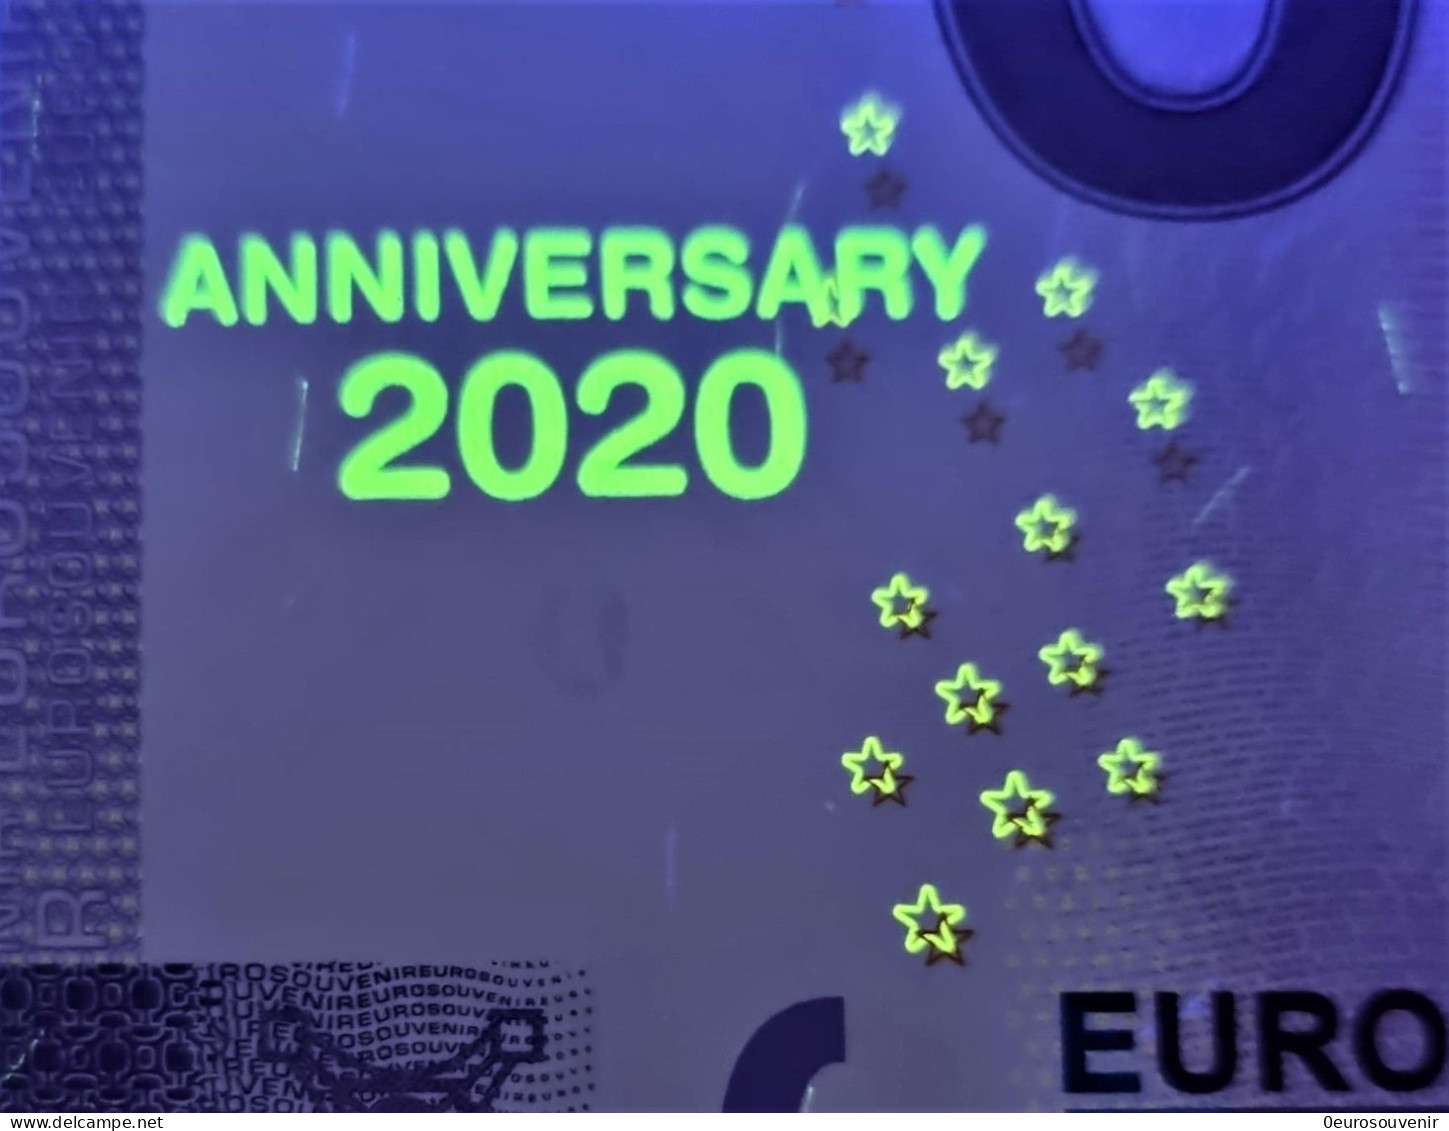 0-Euro XEMP 1 2020 EISENHÜTTENSTADT 1950-2020 - 70 JAHRE WERK UND STADT Set NORMAL+ANNIVERSARY - Essais Privés / Non-officiels